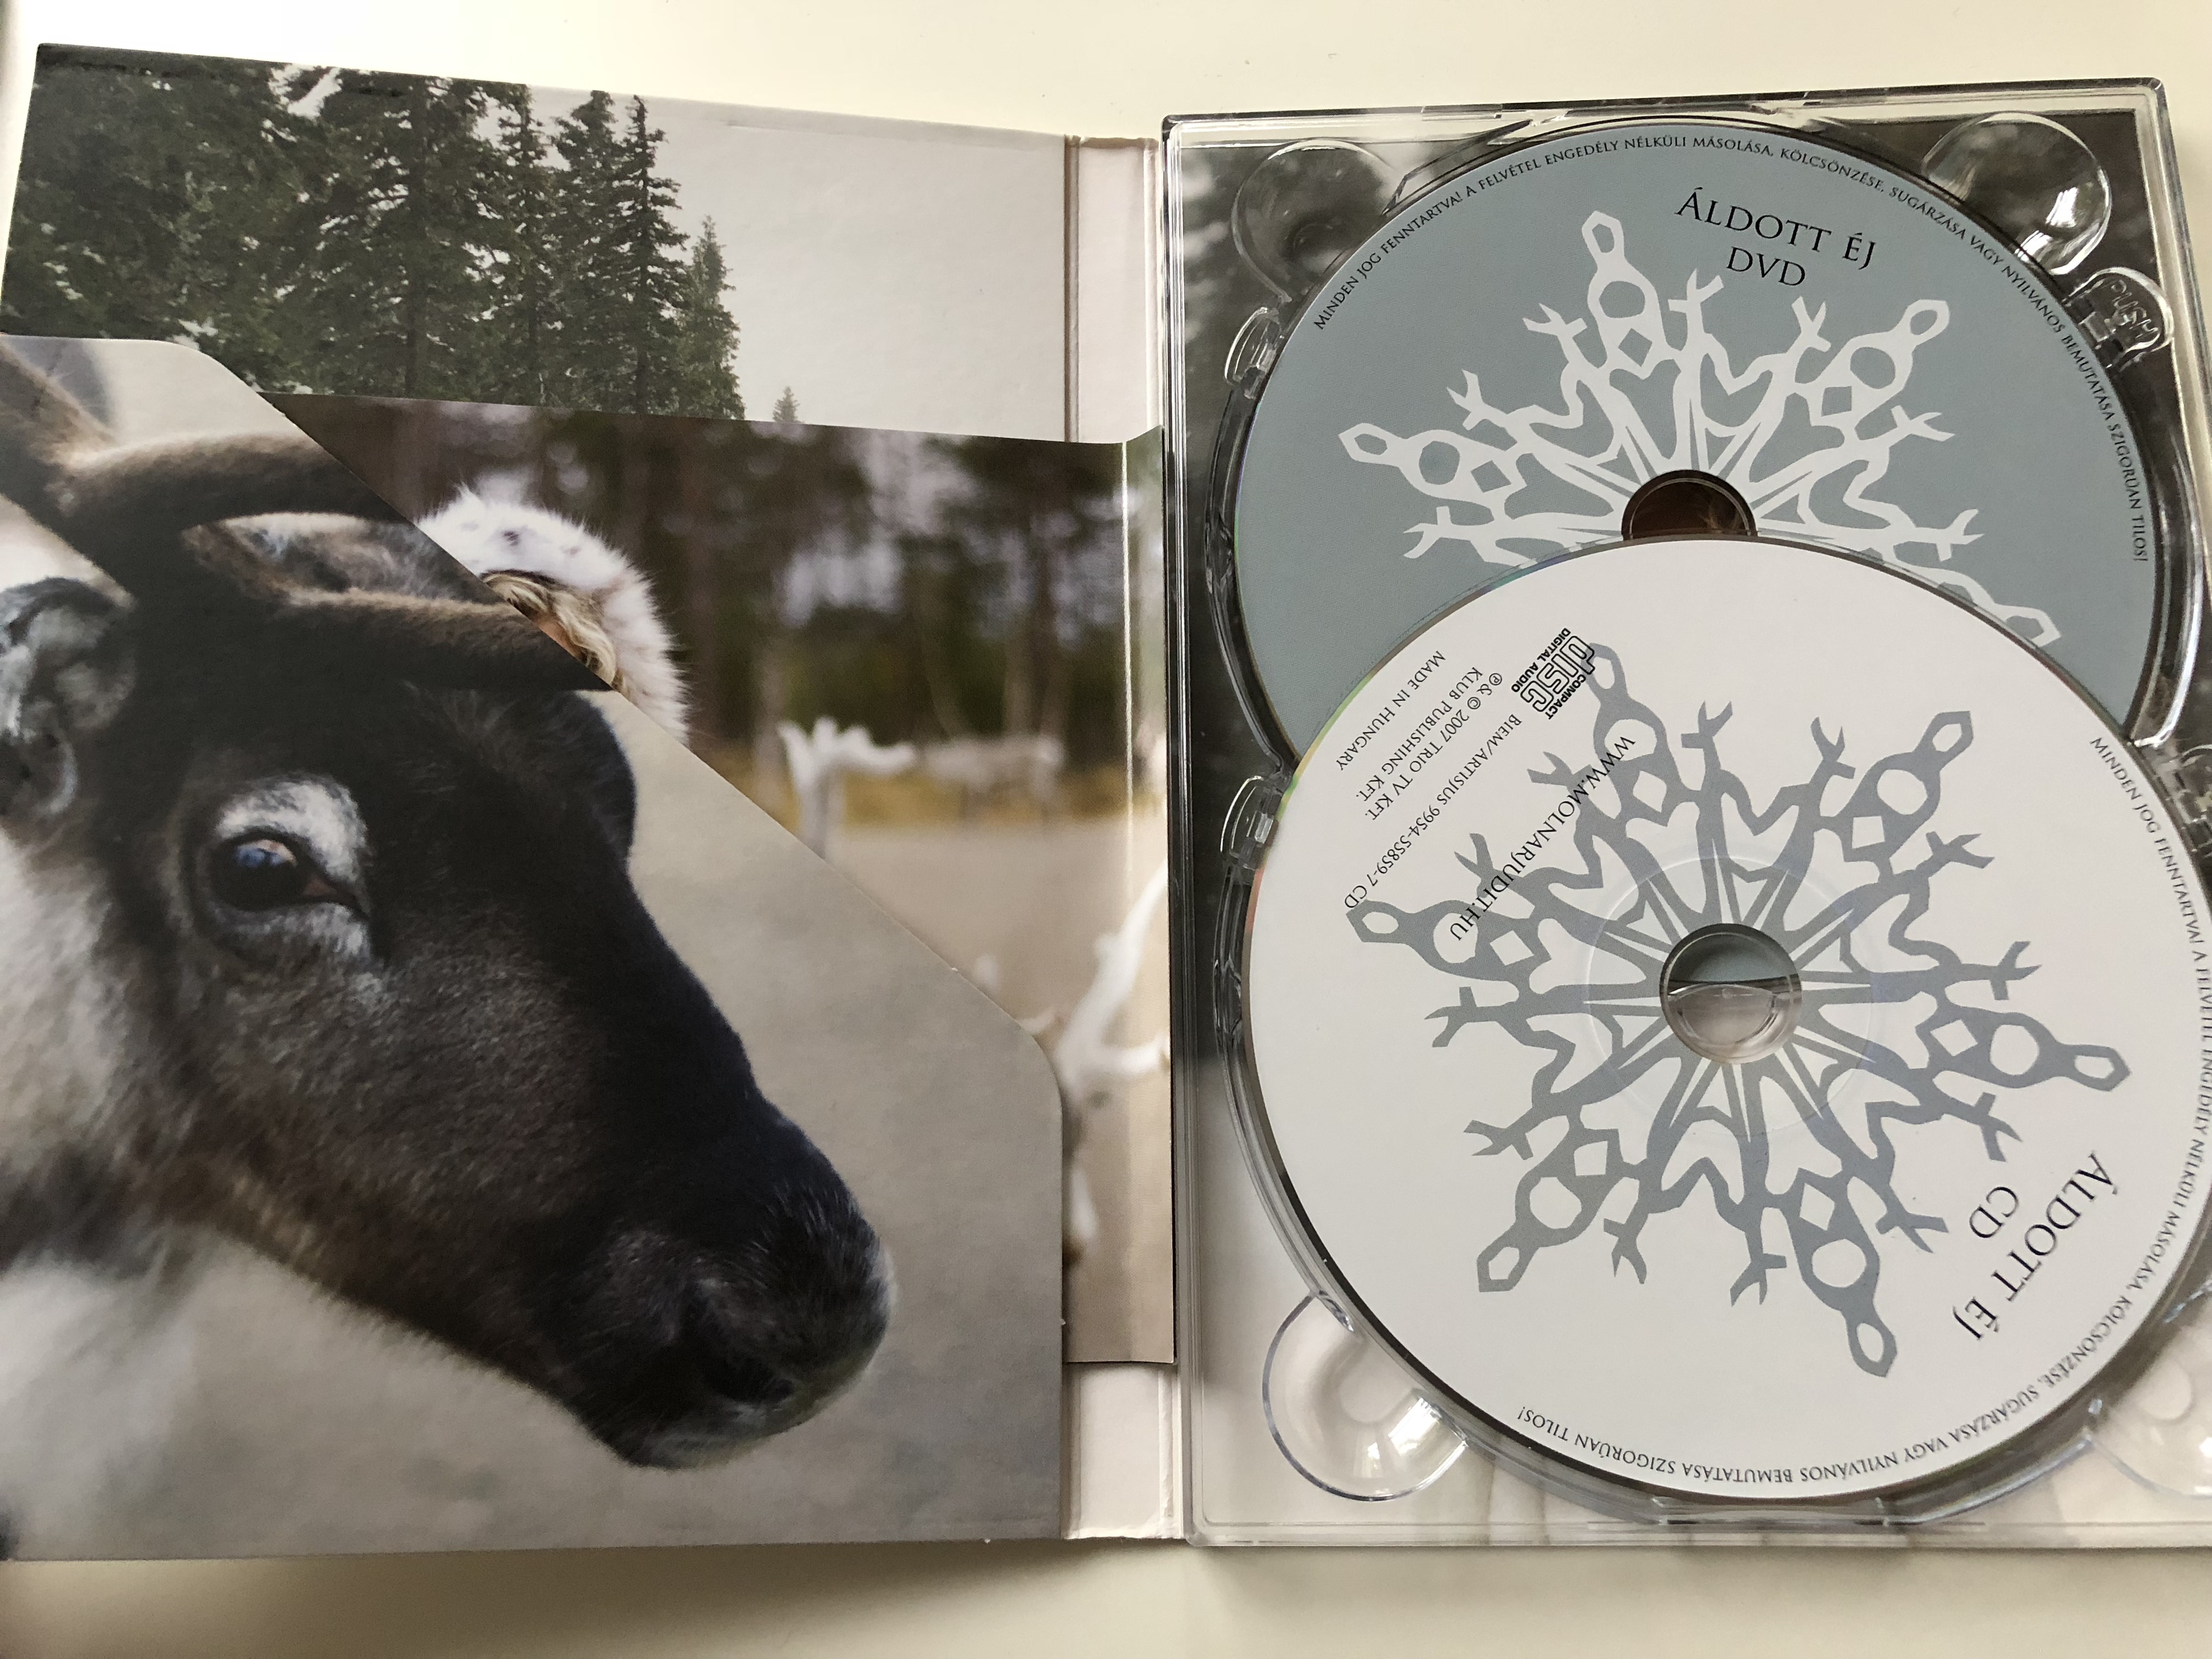 -v.-moln-r-judit-ldott-j-cd-dvd-2007-kar-csonyi-dalok-christmas-songs-h-feh-r-kar-csony-the-first-noel-o-holy-night-white-christmas-2-.jpg